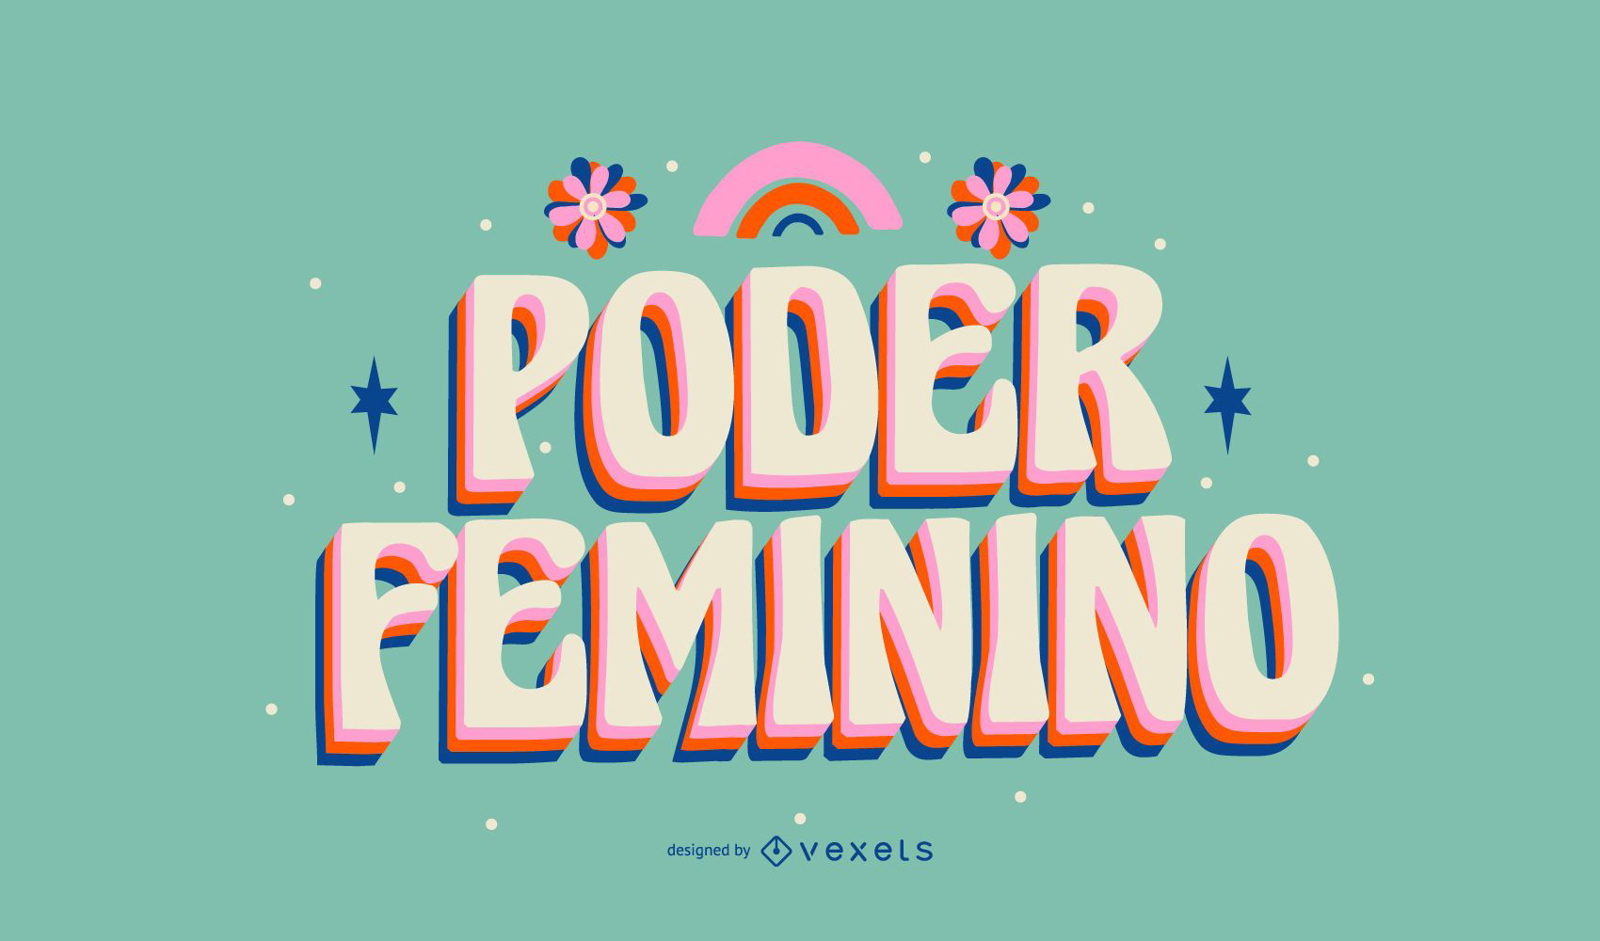 Letras portuguesas del día de la mujer